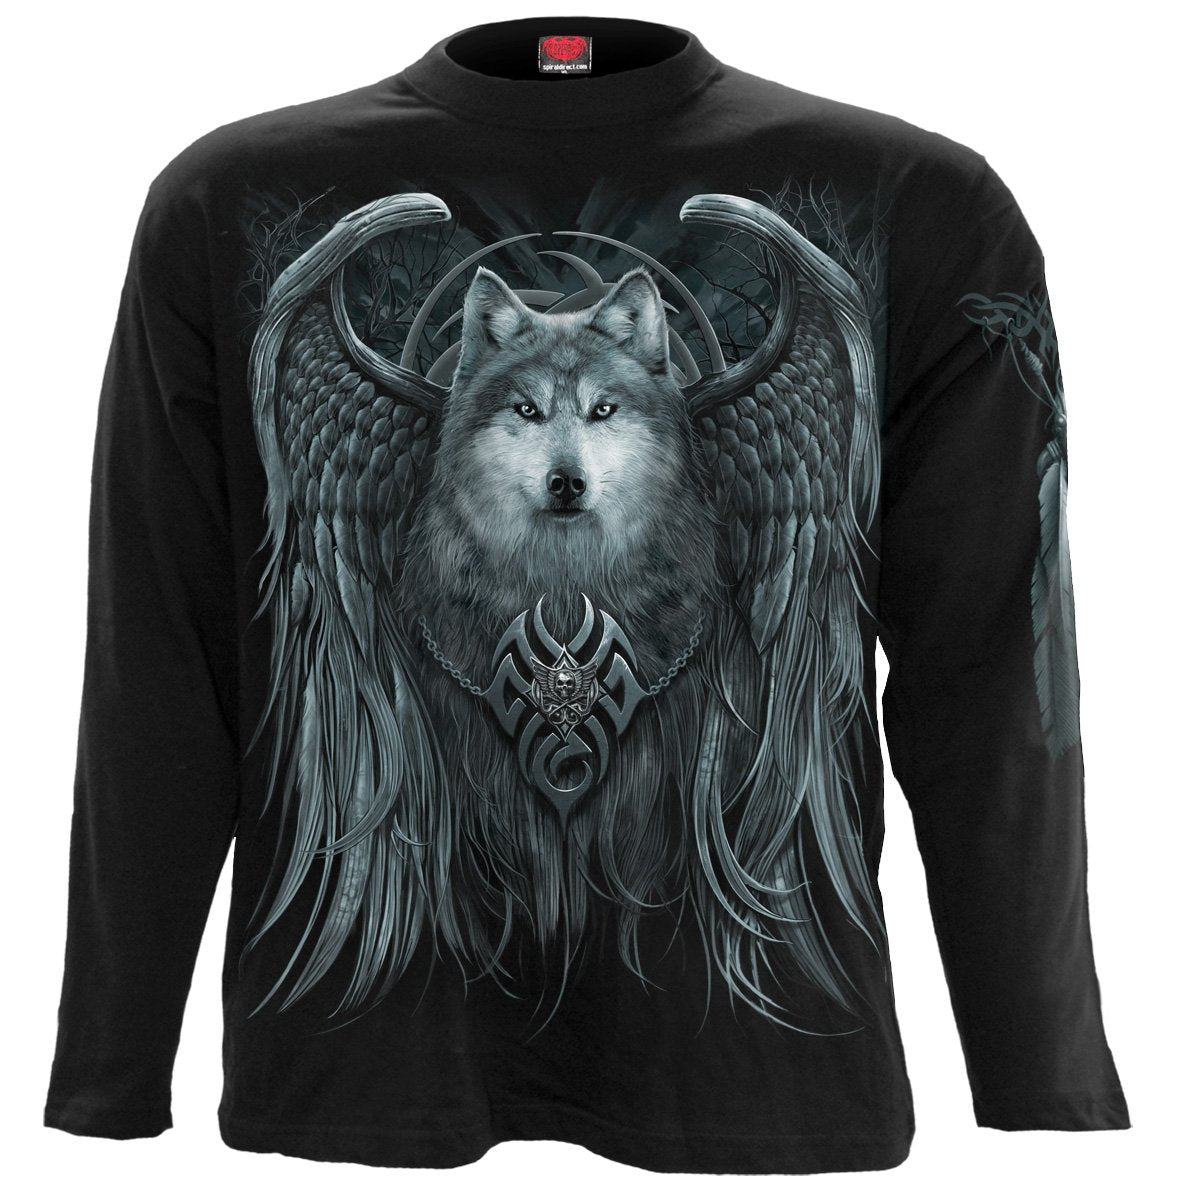 WOLF SPIRIT - Longsleeve T-Shirt Black - Spiral USA